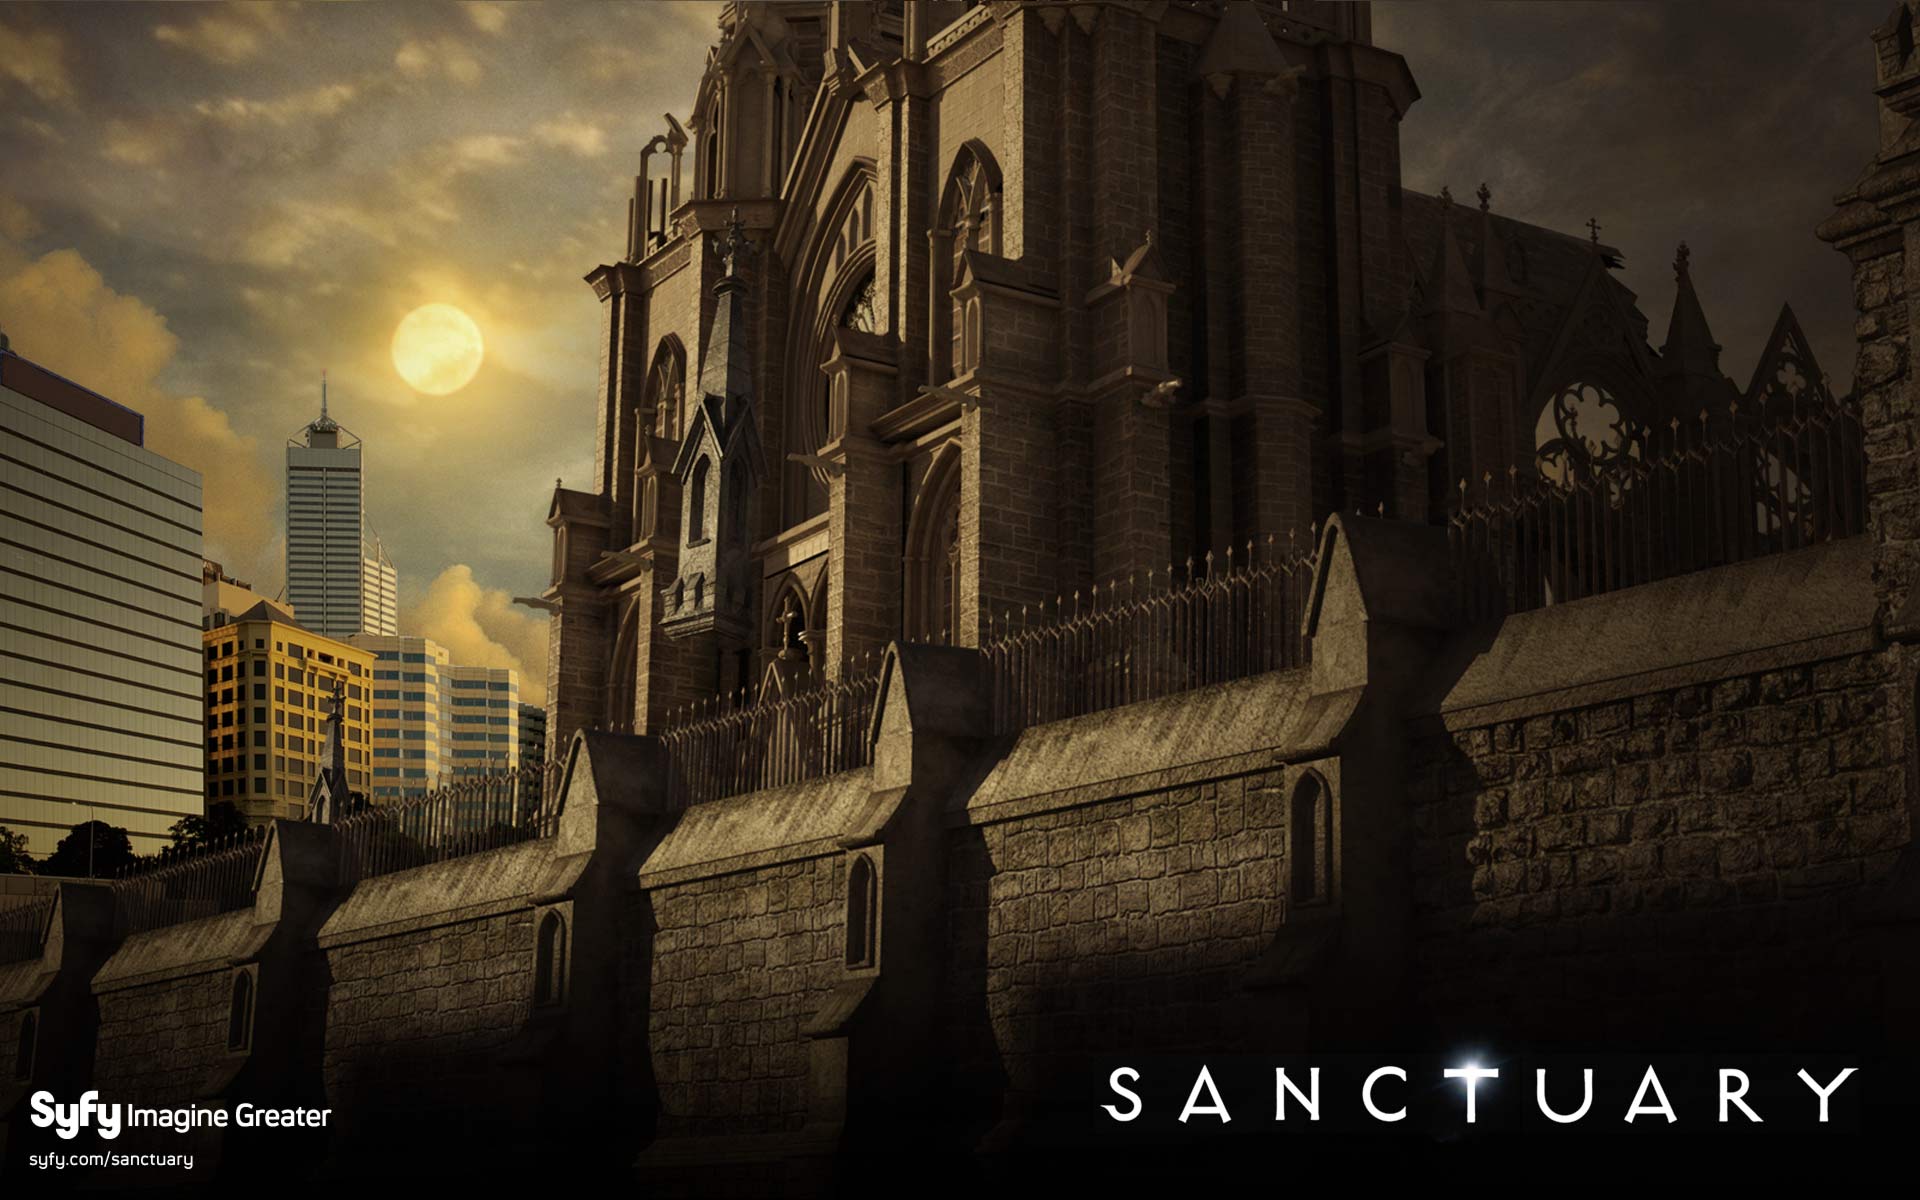 Sanctuary TV show backdrop